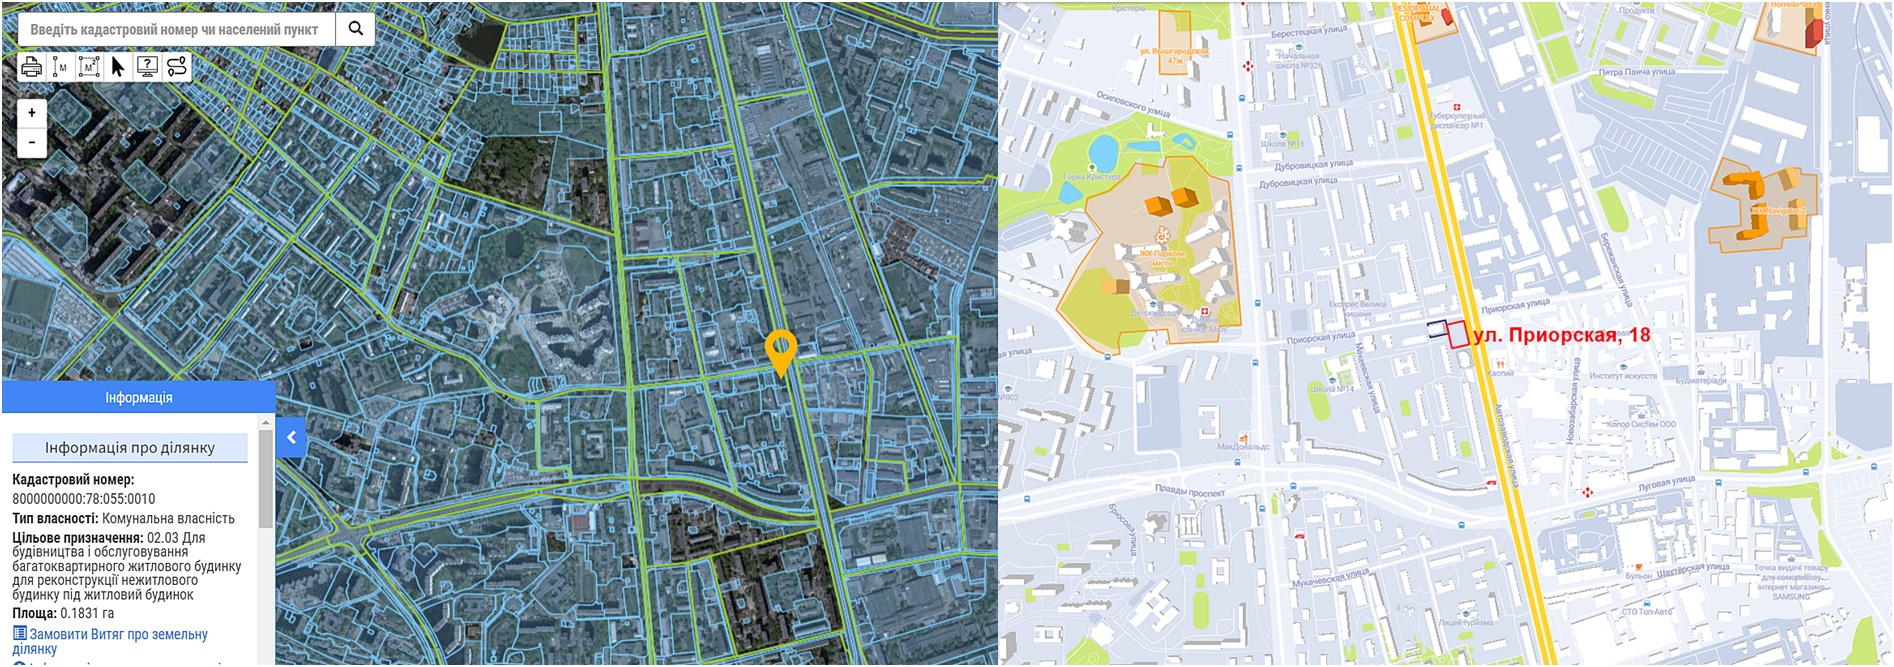 Реконструкция по ул. Приорская, 18 данные кадастра и на карте